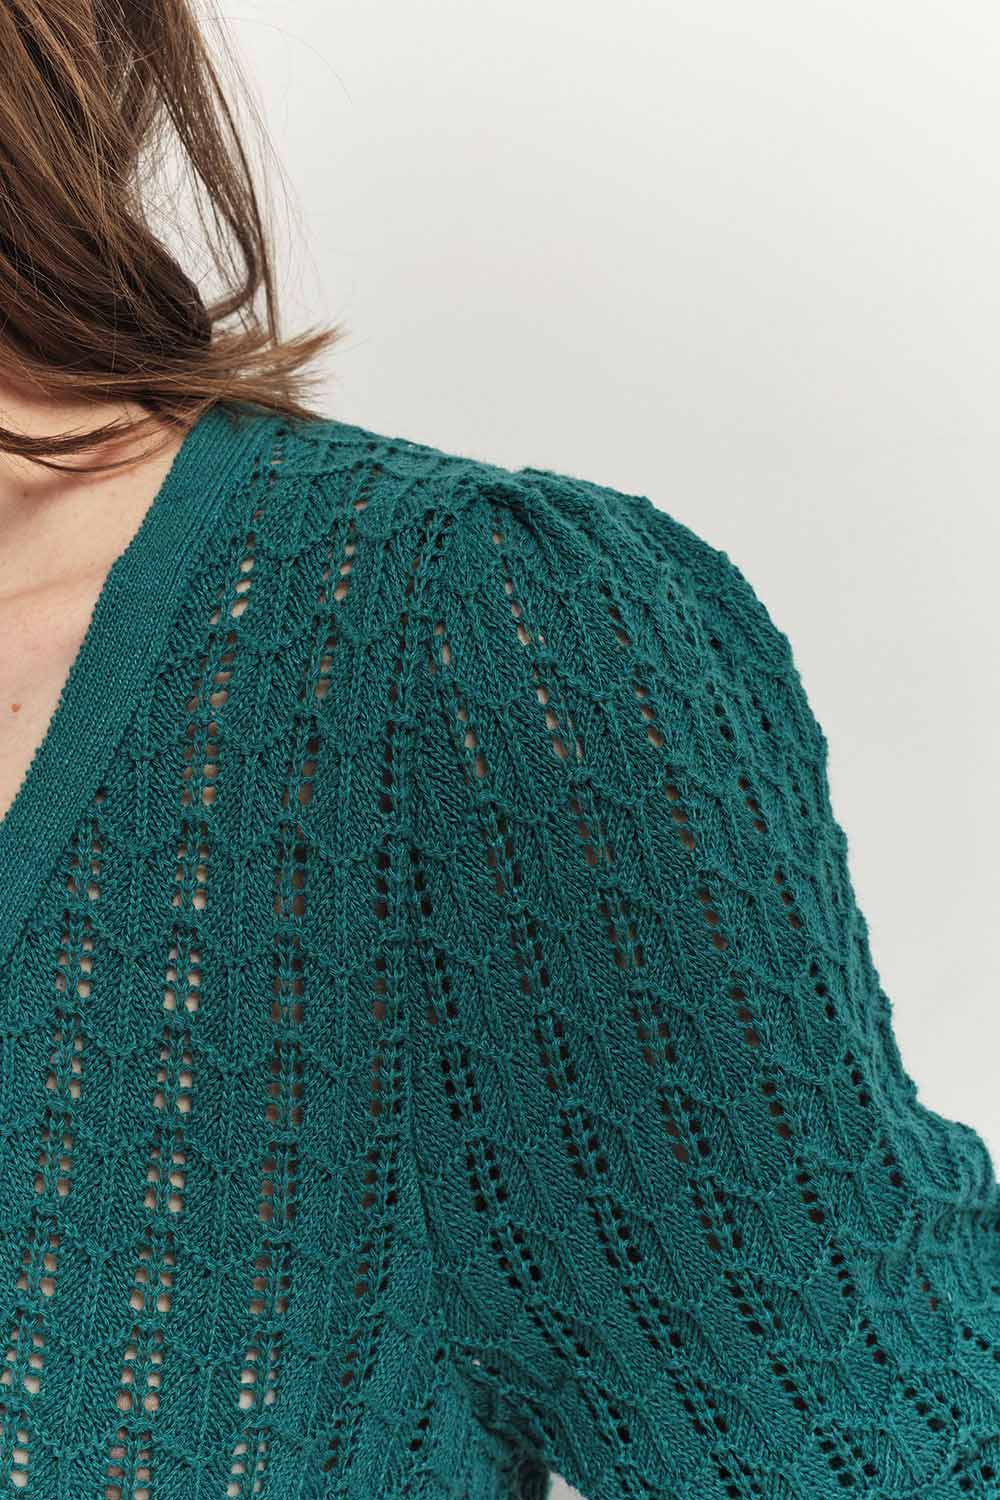 TARRY - Cardigan réversible vert cèdre tricot ajouré